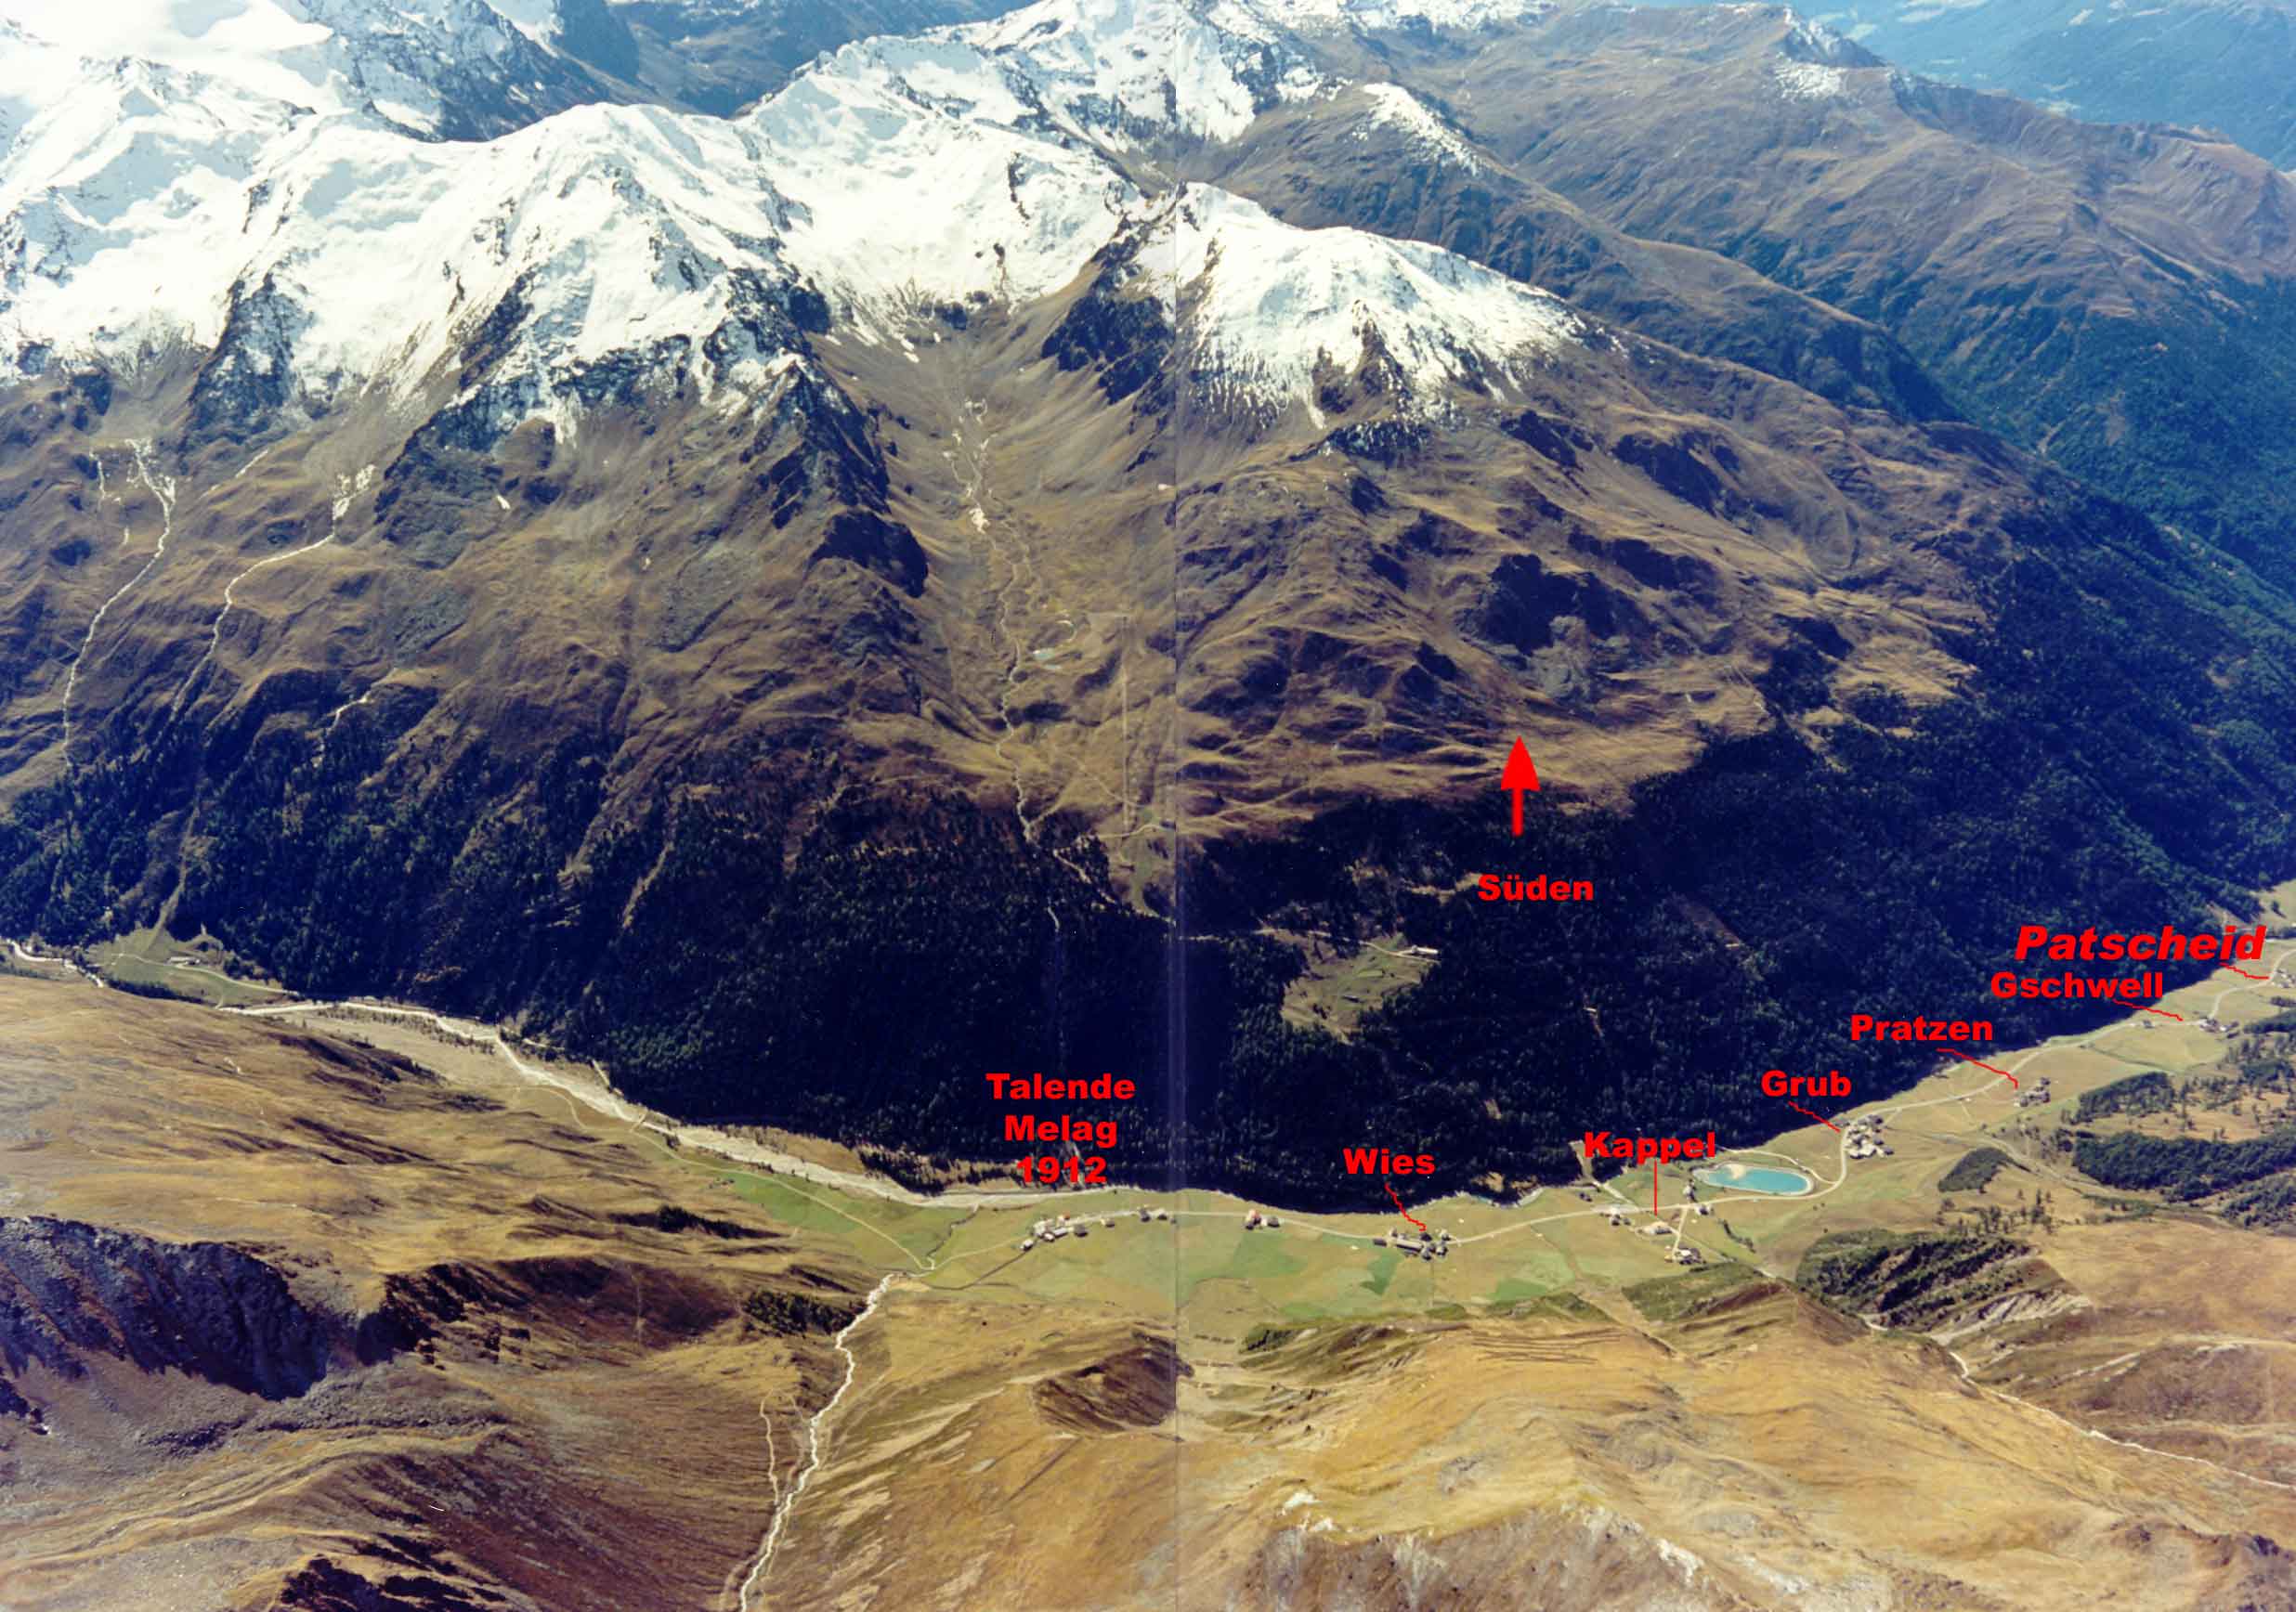 Luftaufnahme vom Langtauferer Tal mit der Lage der einzelnen Höfe: Melag, Wies, Kappl, Grub, Pratzen, Gschwell und Patscheid